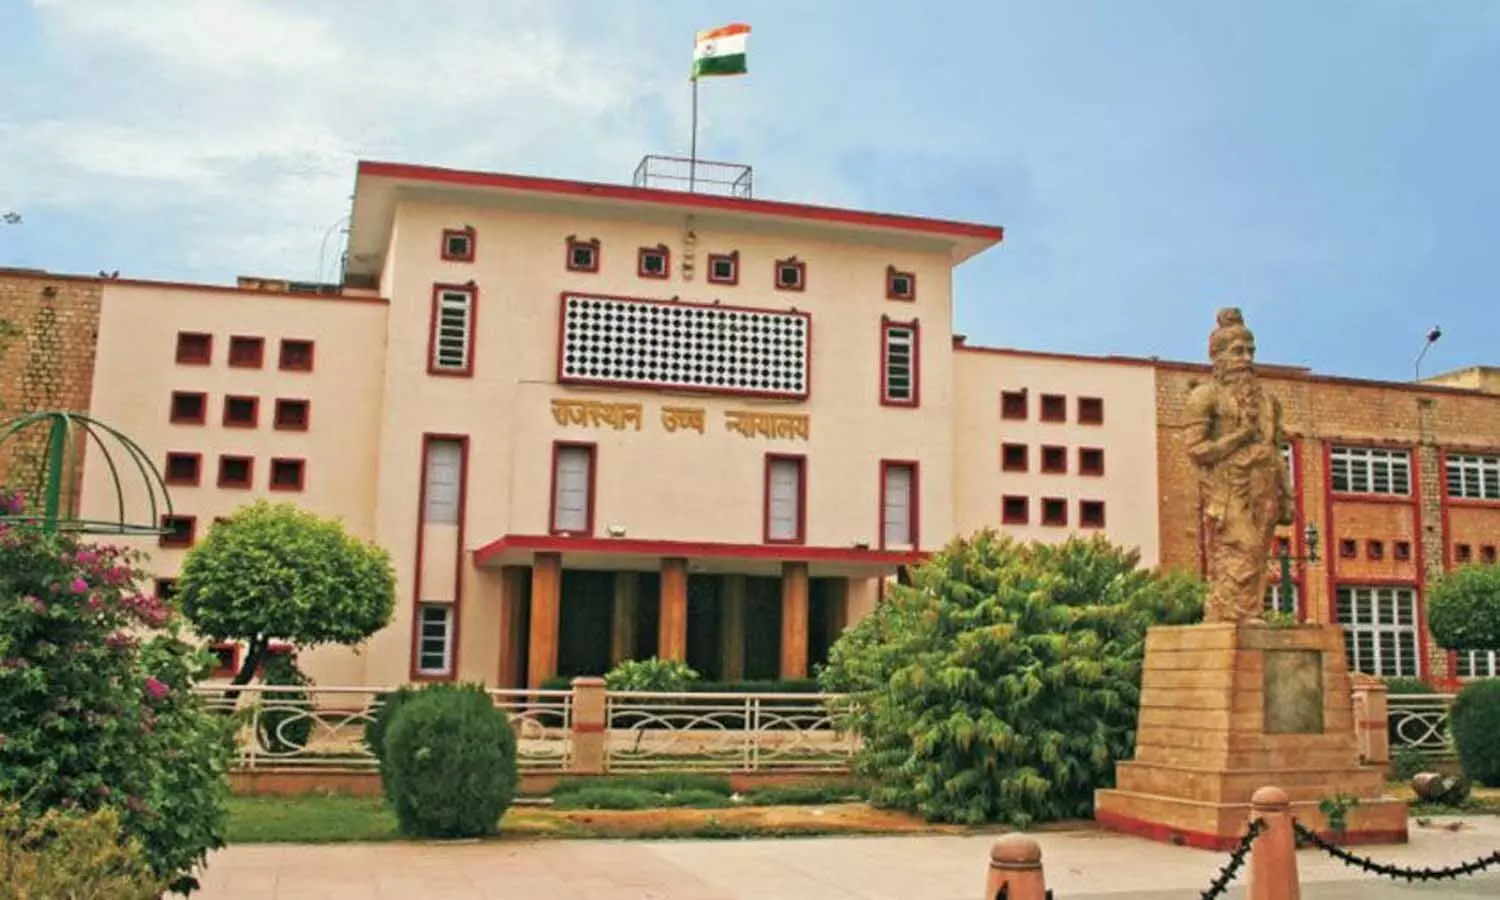 Rajasthan High Court: वन बार वन वोट प्रकरण में 21 अगस्त को सुनवाई, जानिए क्या है पूरा मामला?